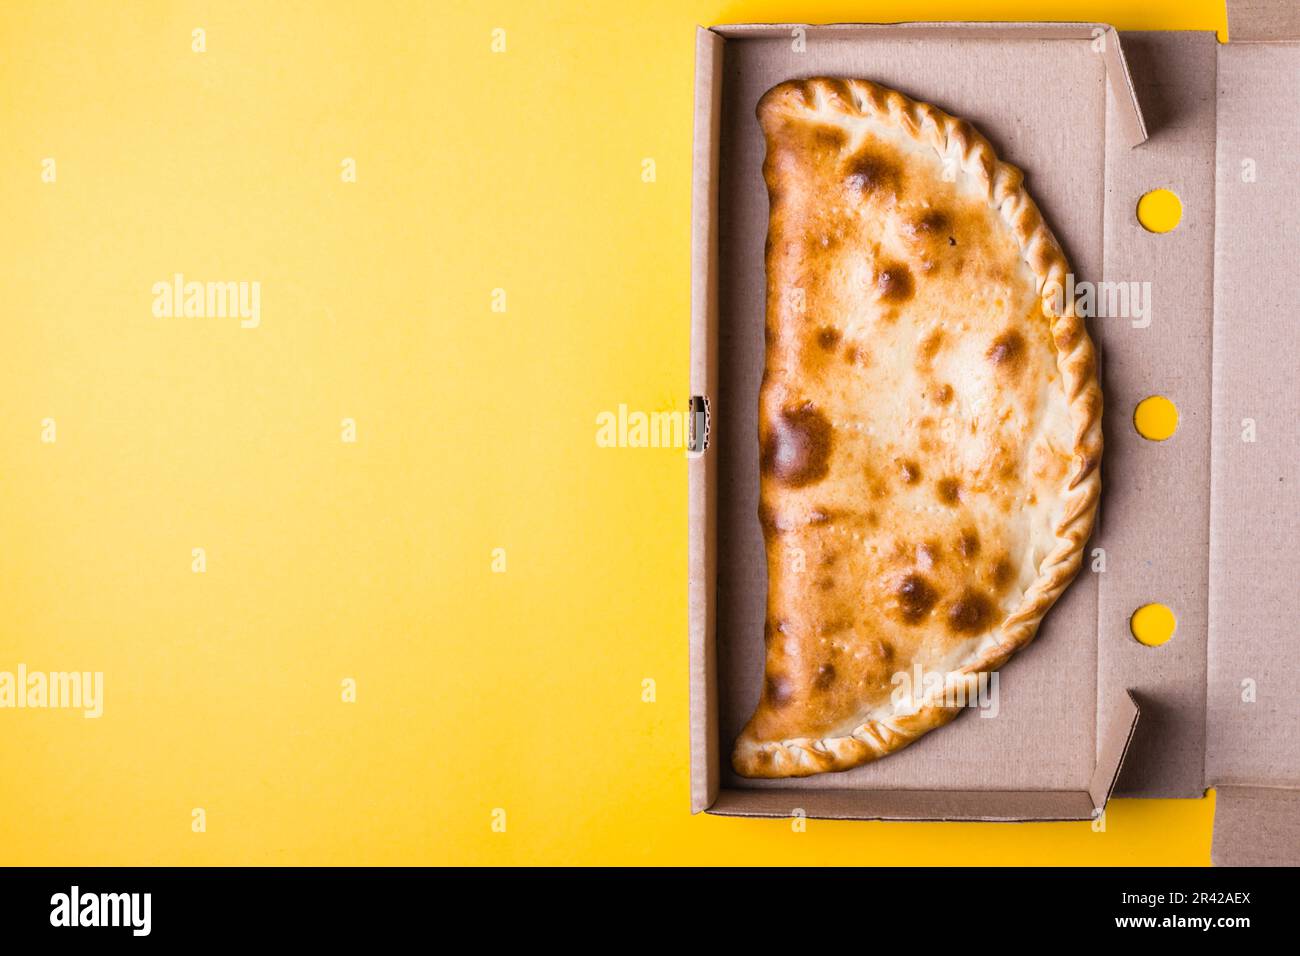 Fermeture de la zone de calzone de pizza dans la boîte d'emballage sur fond jaune Banque D'Images